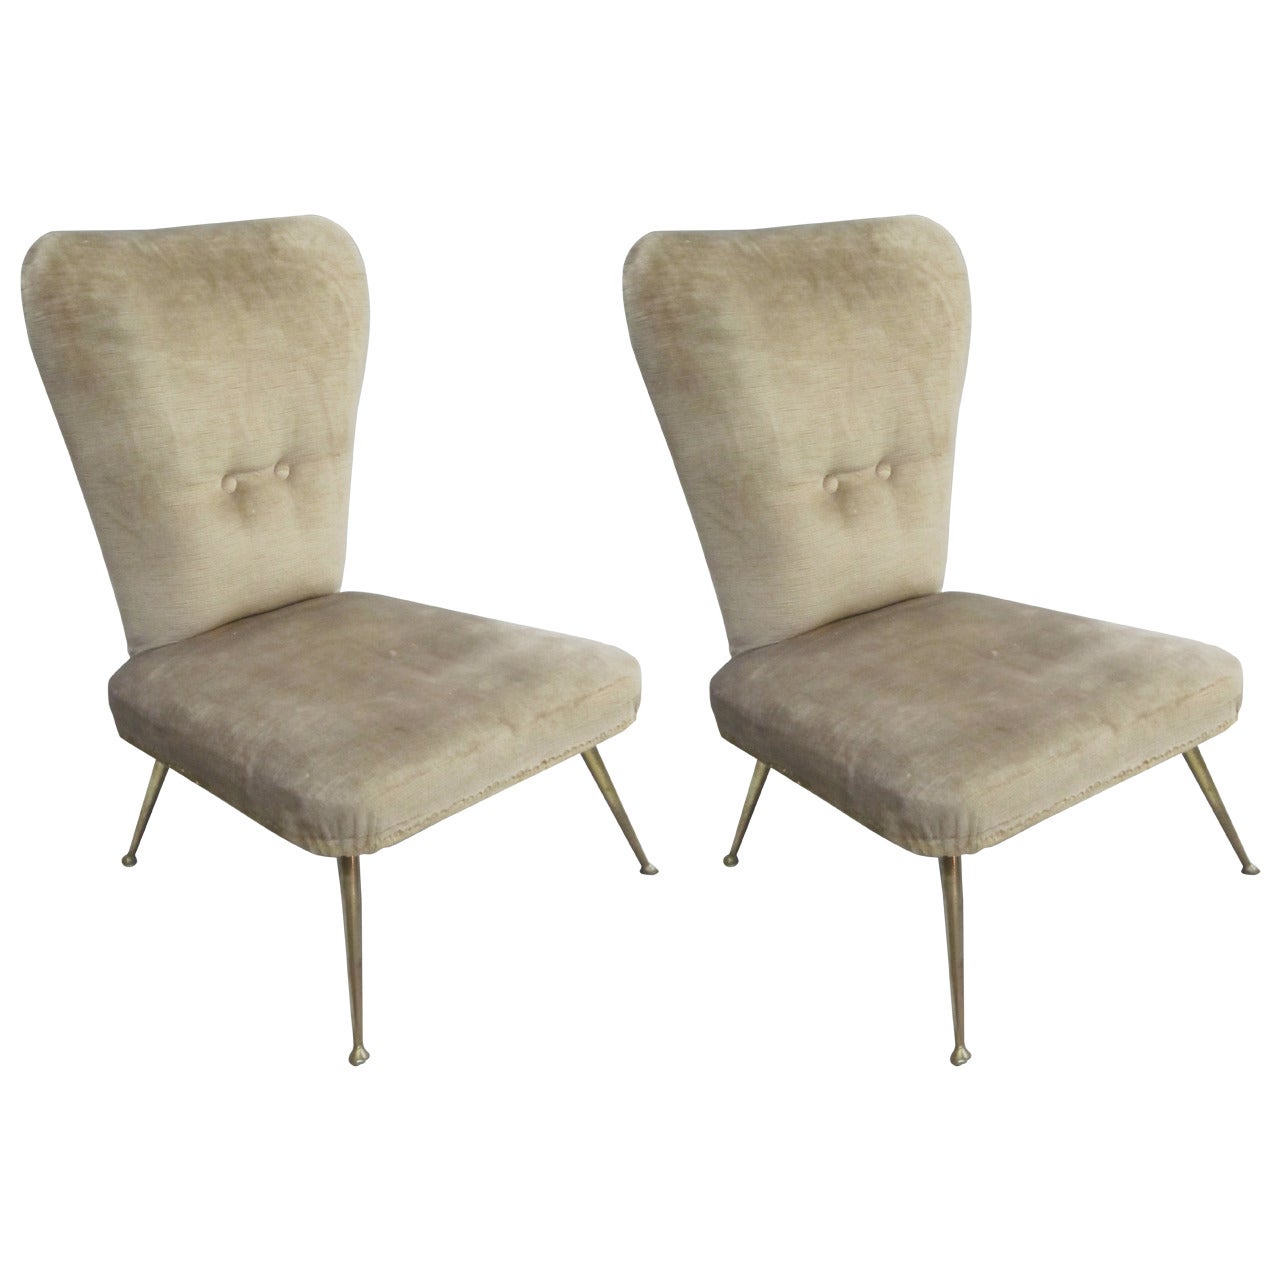 Paire de fauteuils ou chaises longues modernes du milieu du siècle dernier attribuée à Marco Zanuso